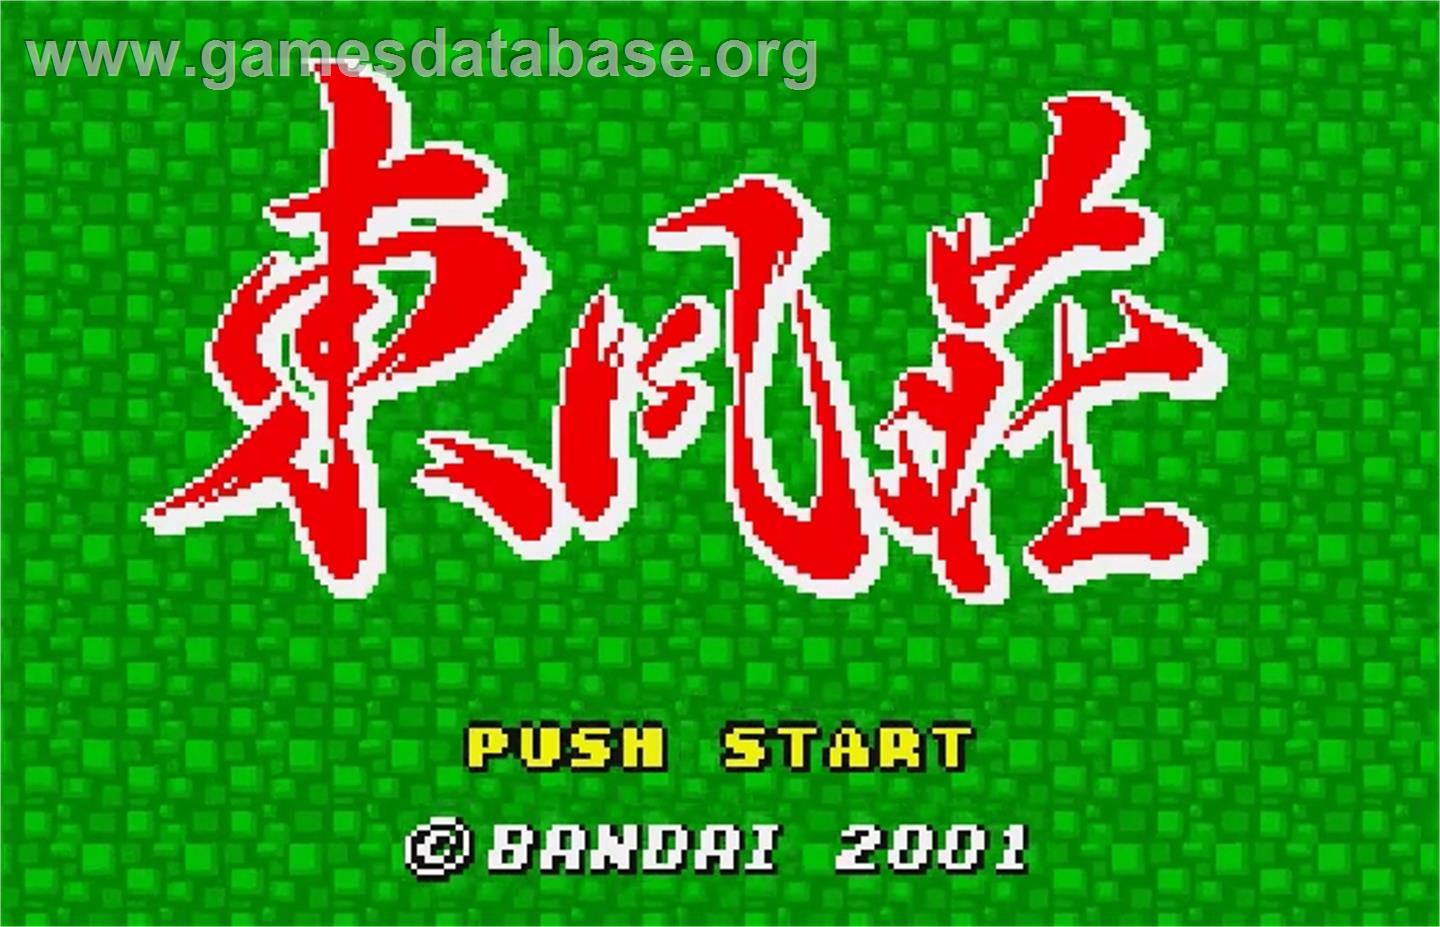 Tonpuusou - Bandai WonderSwan Color - Artwork - Title Screen